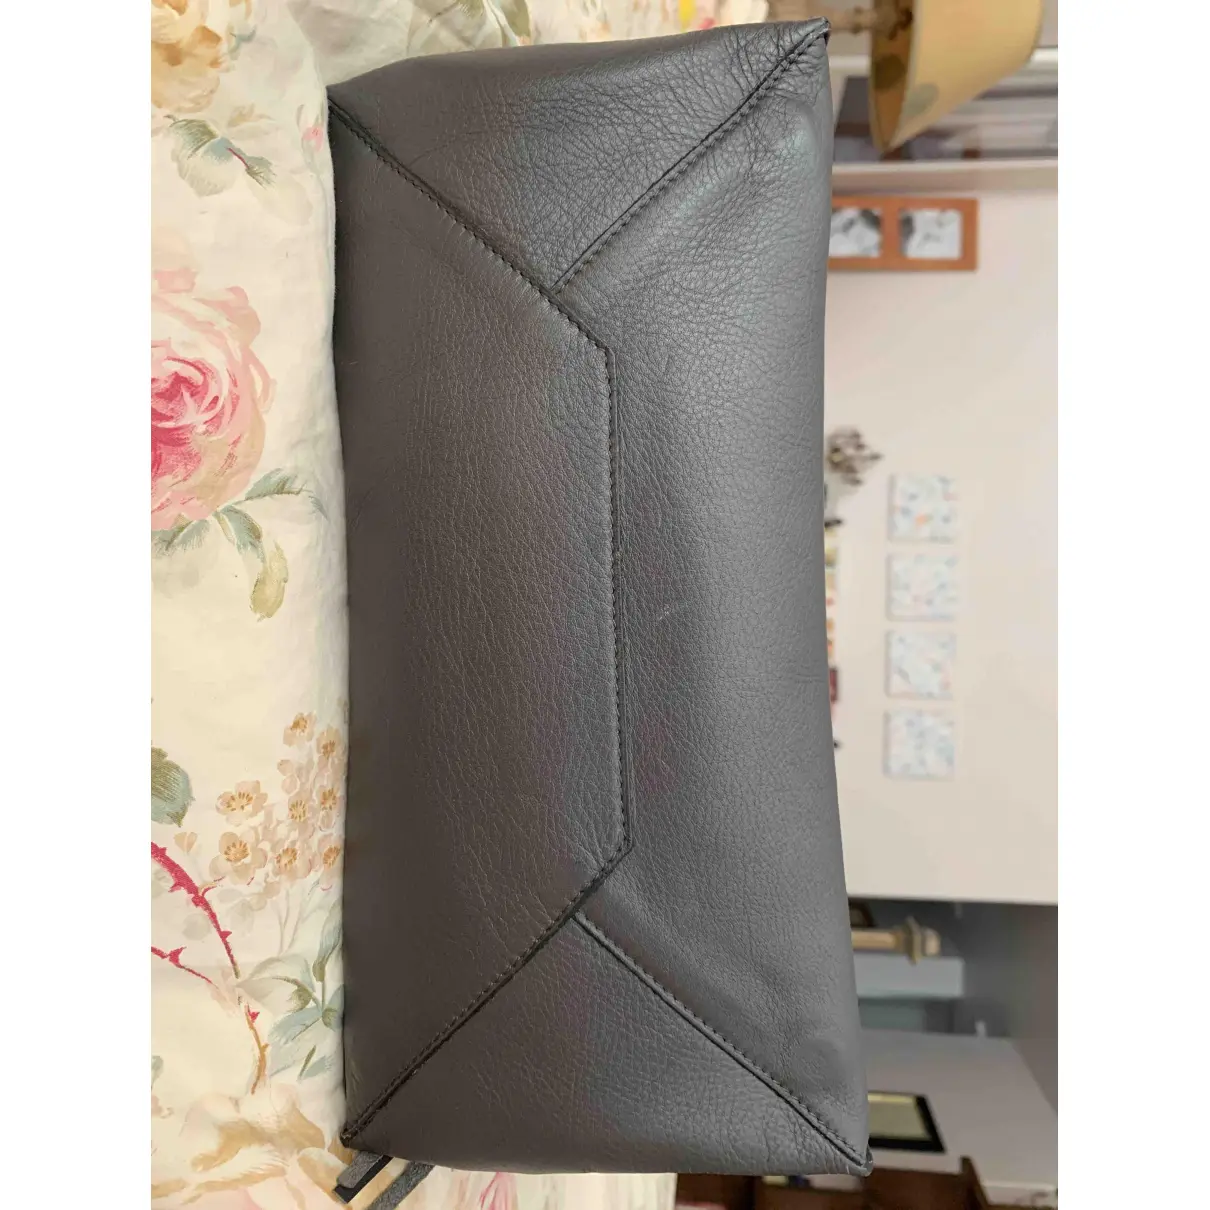 Papier leather handbag Balenciaga